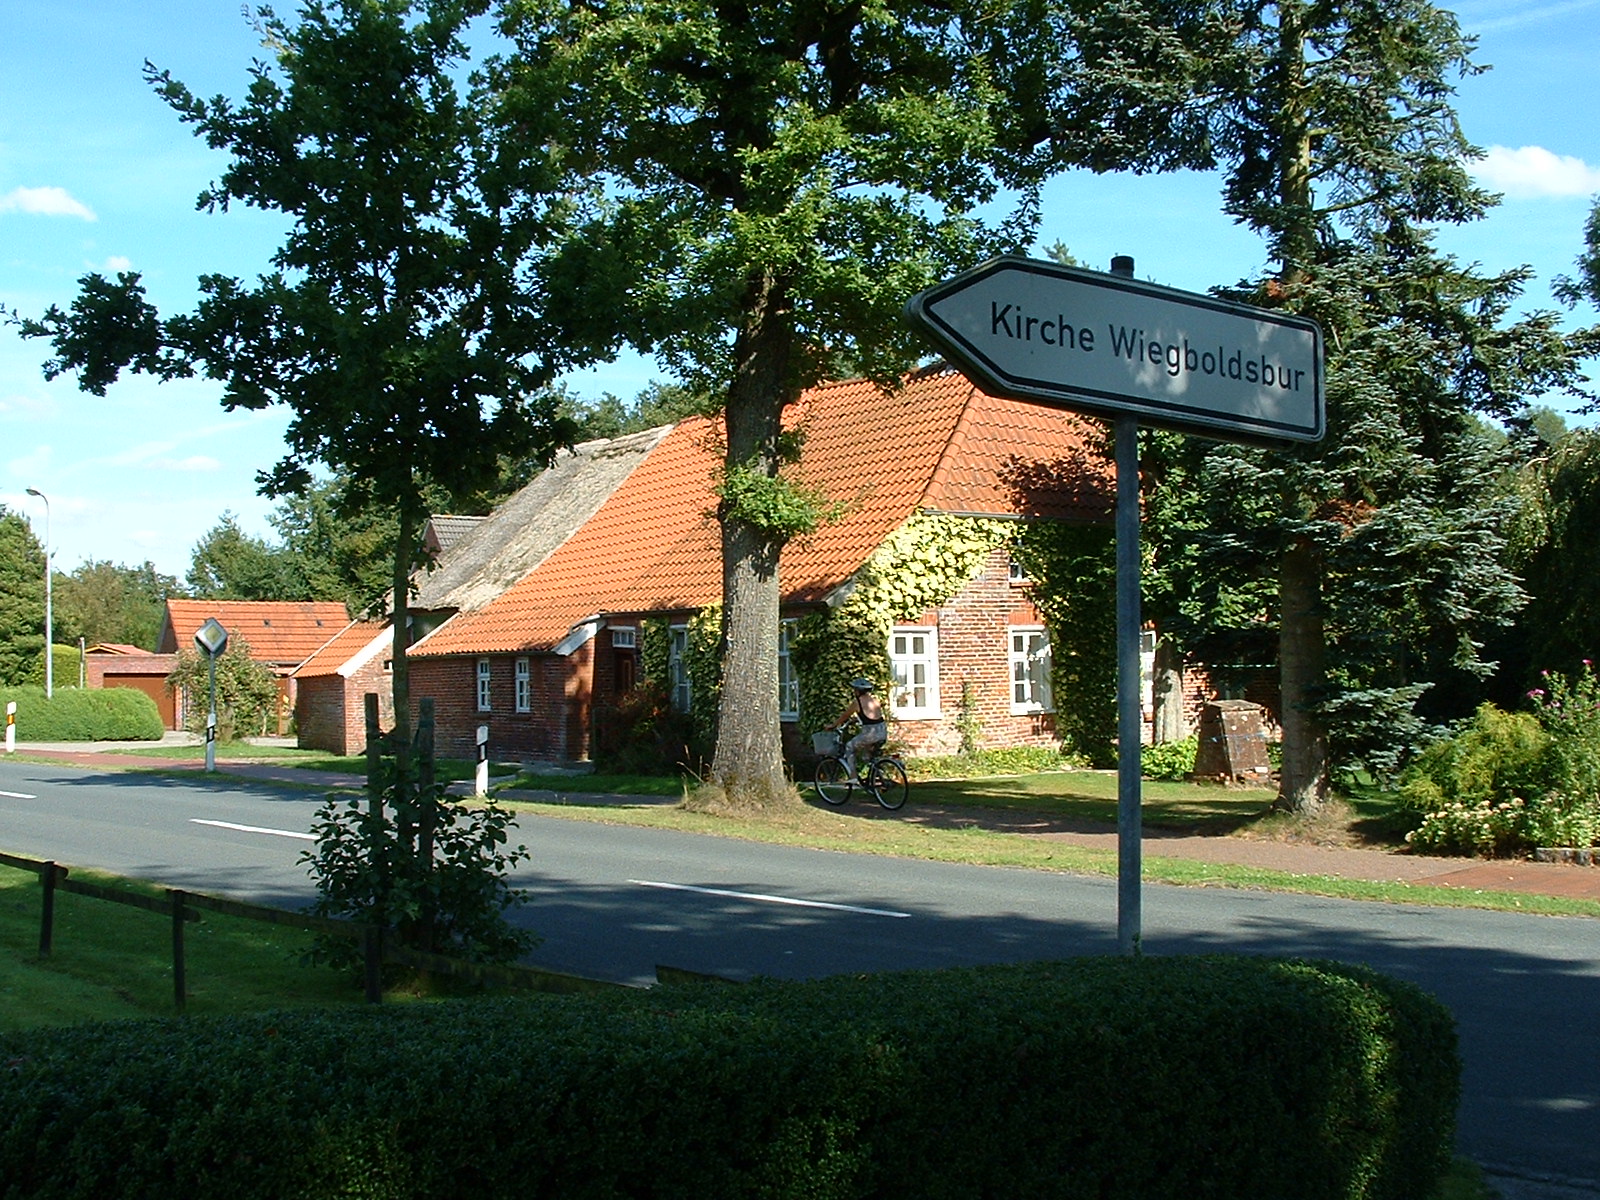 Die Wibadikirche in Wiegboldsbur - Ostfriesland - Hinweisschild an der Hauptstraße